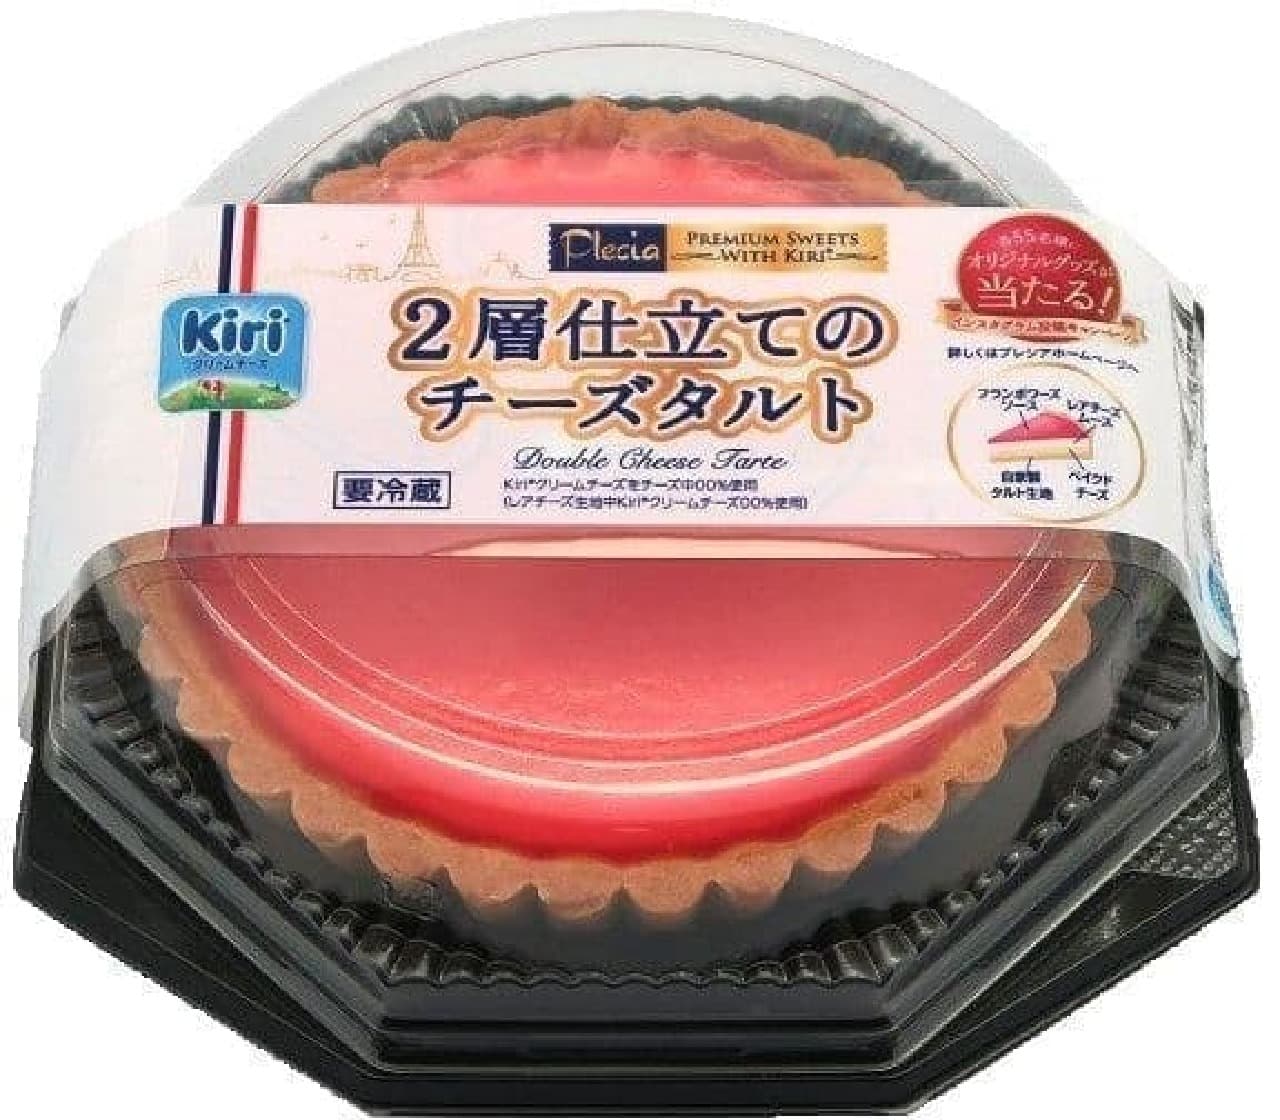 "Two-layered cheese tart" using Kiri cream cheese